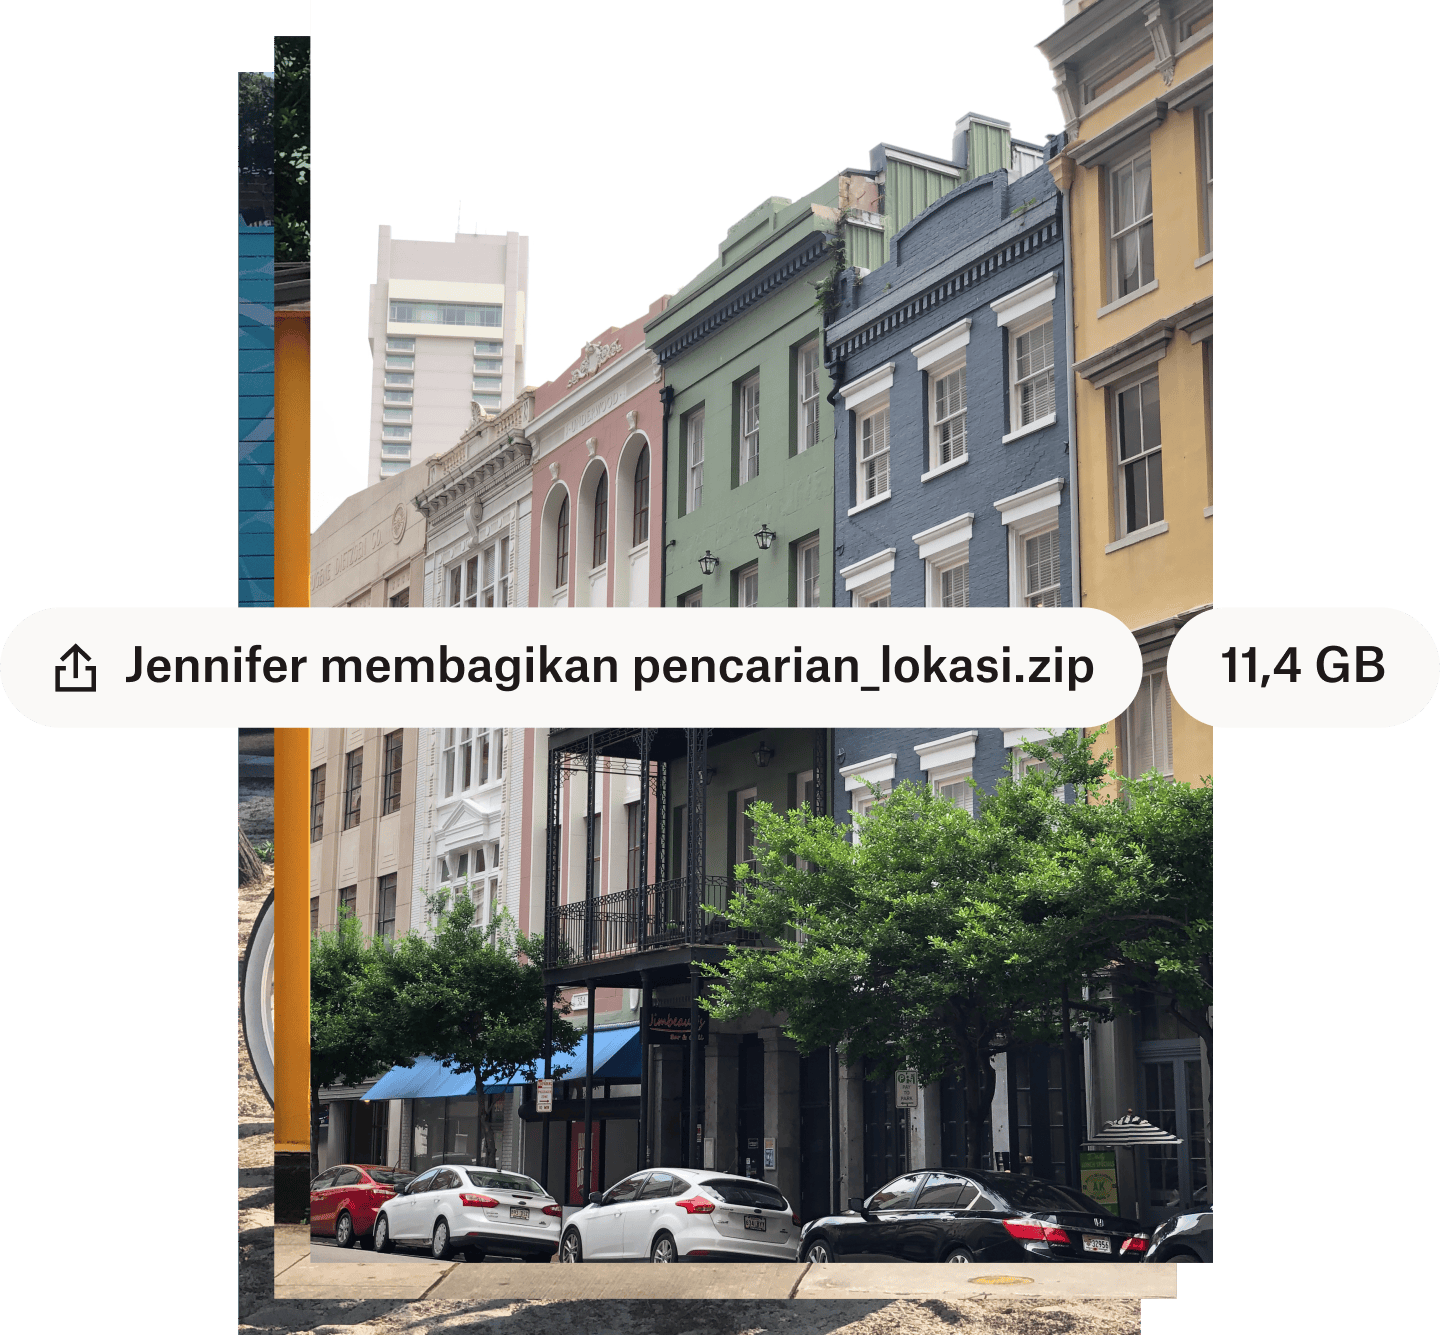 Foto jalanan kota dengan bangunan berwarna-warni yang disertai nama file dan ukuran file yang tercantum dalam gelembung teks putih